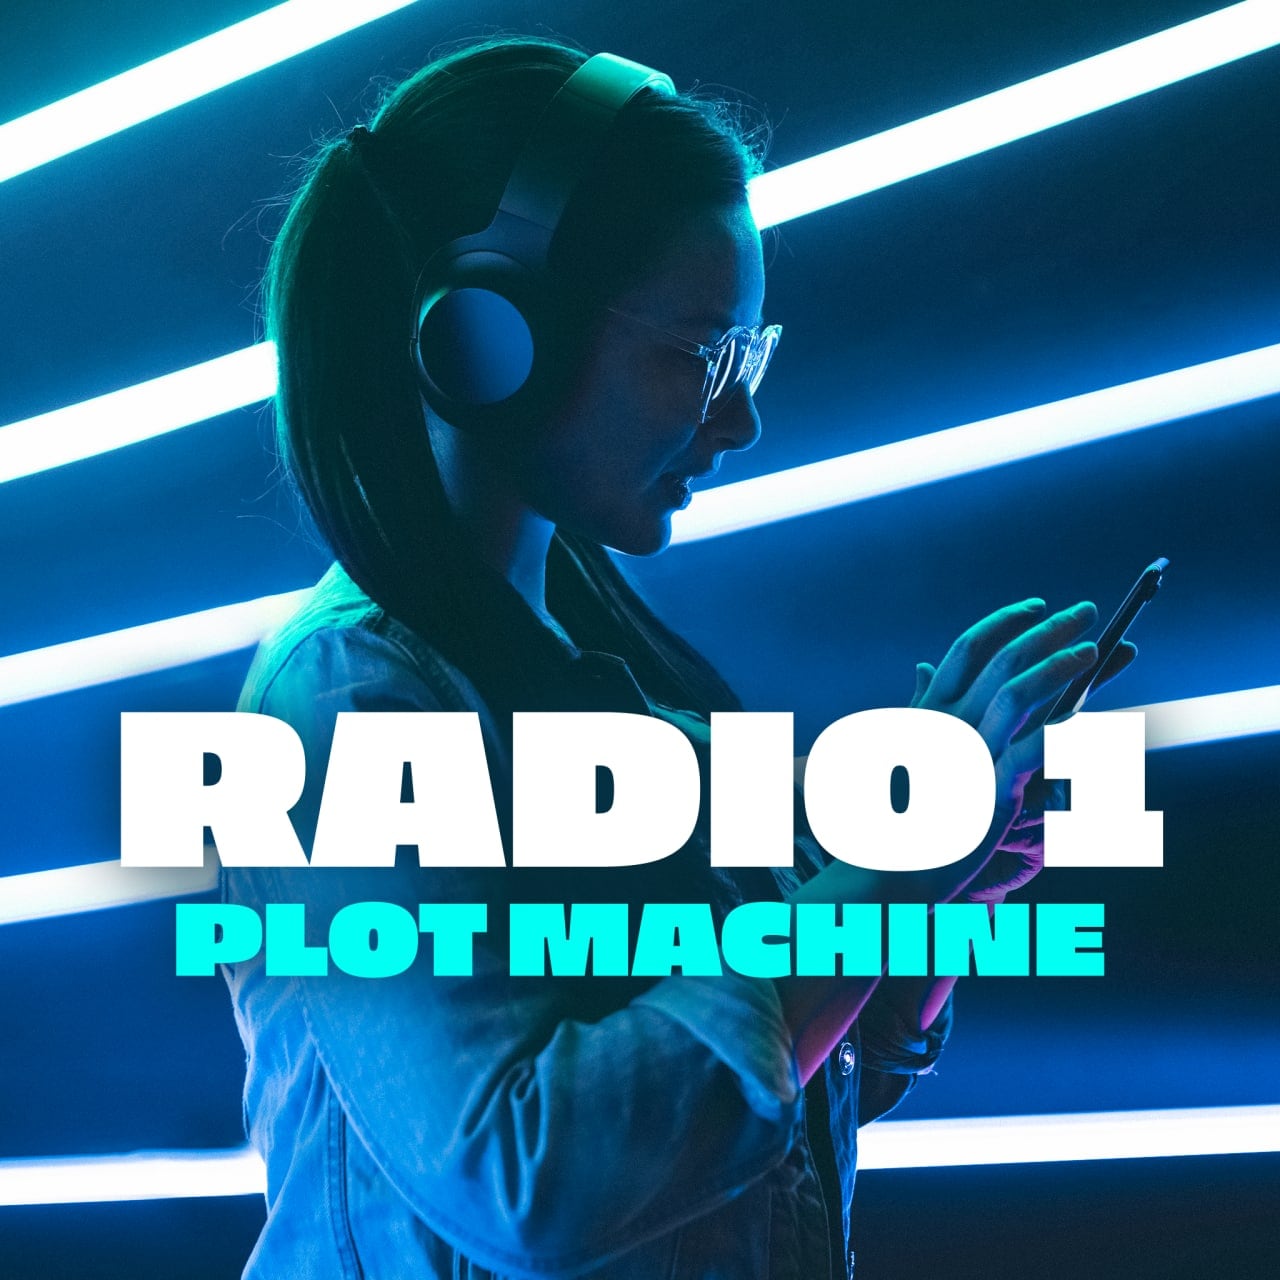 Rai Radio 1 Radio1 Plot Machine